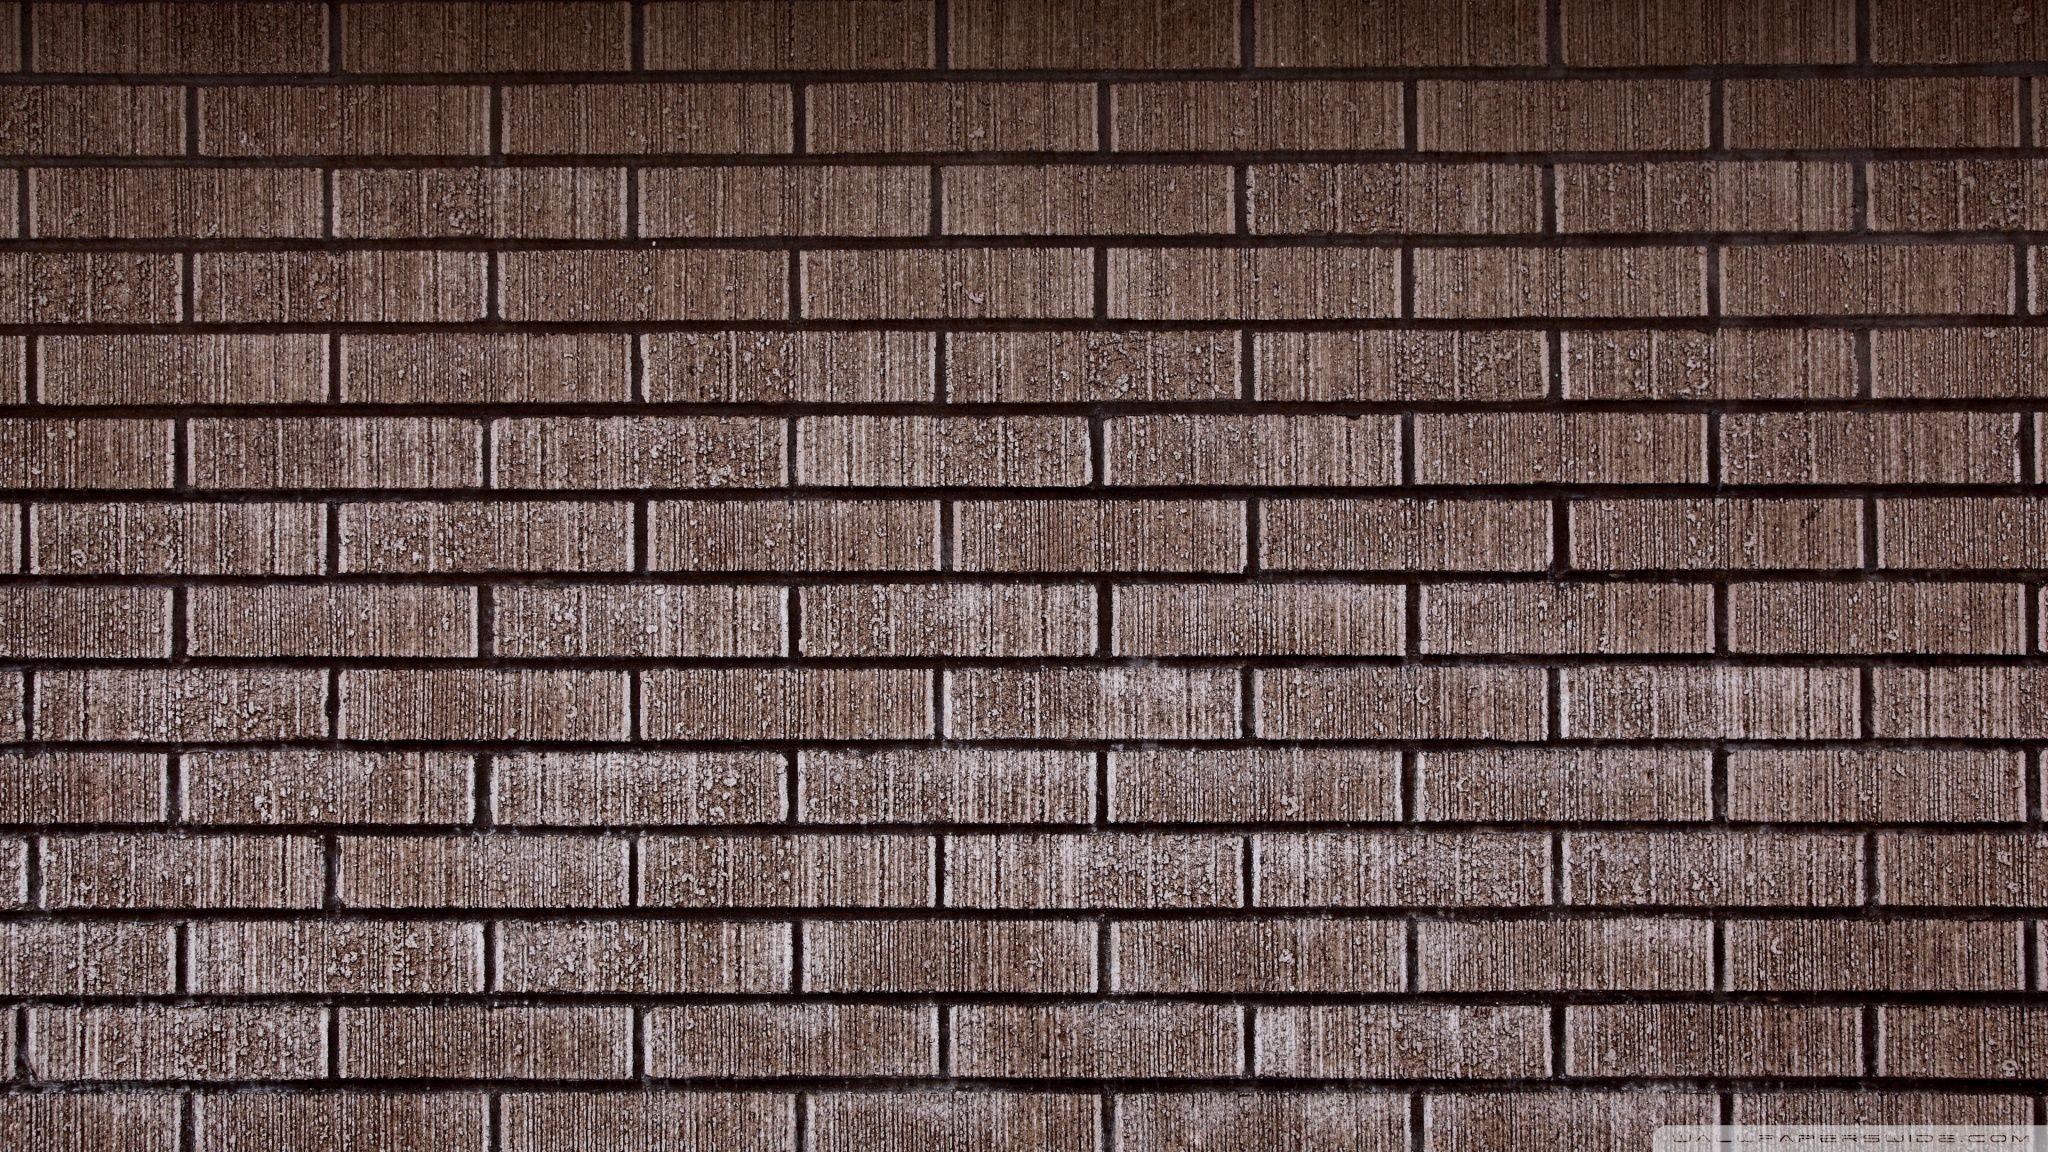 Brick Wall HD desktop wallpaper, High Definition, Fullscreen